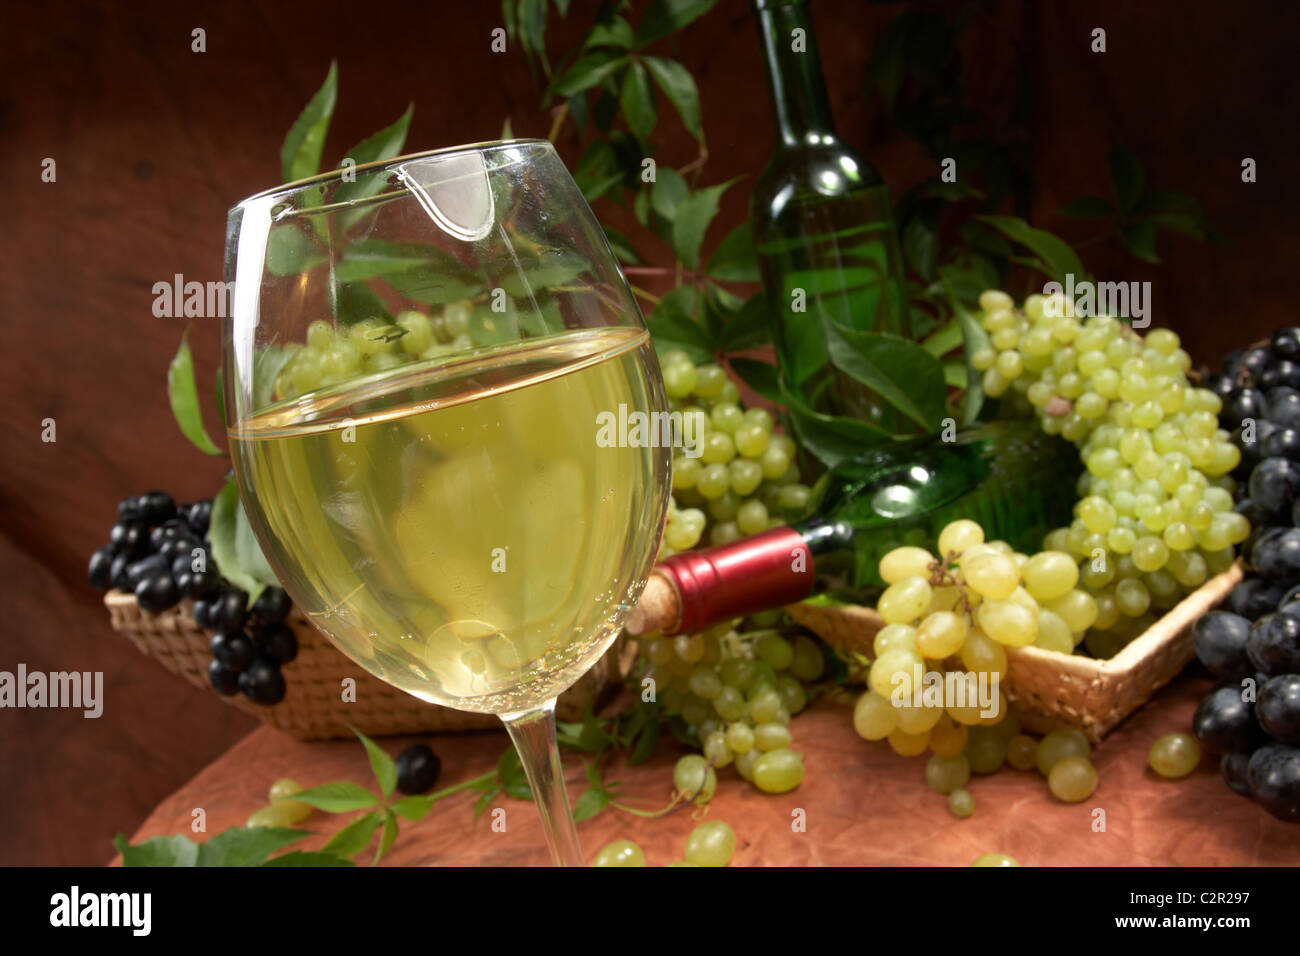 Vino blanco seco, frescos racimos de uvas Foto de stock